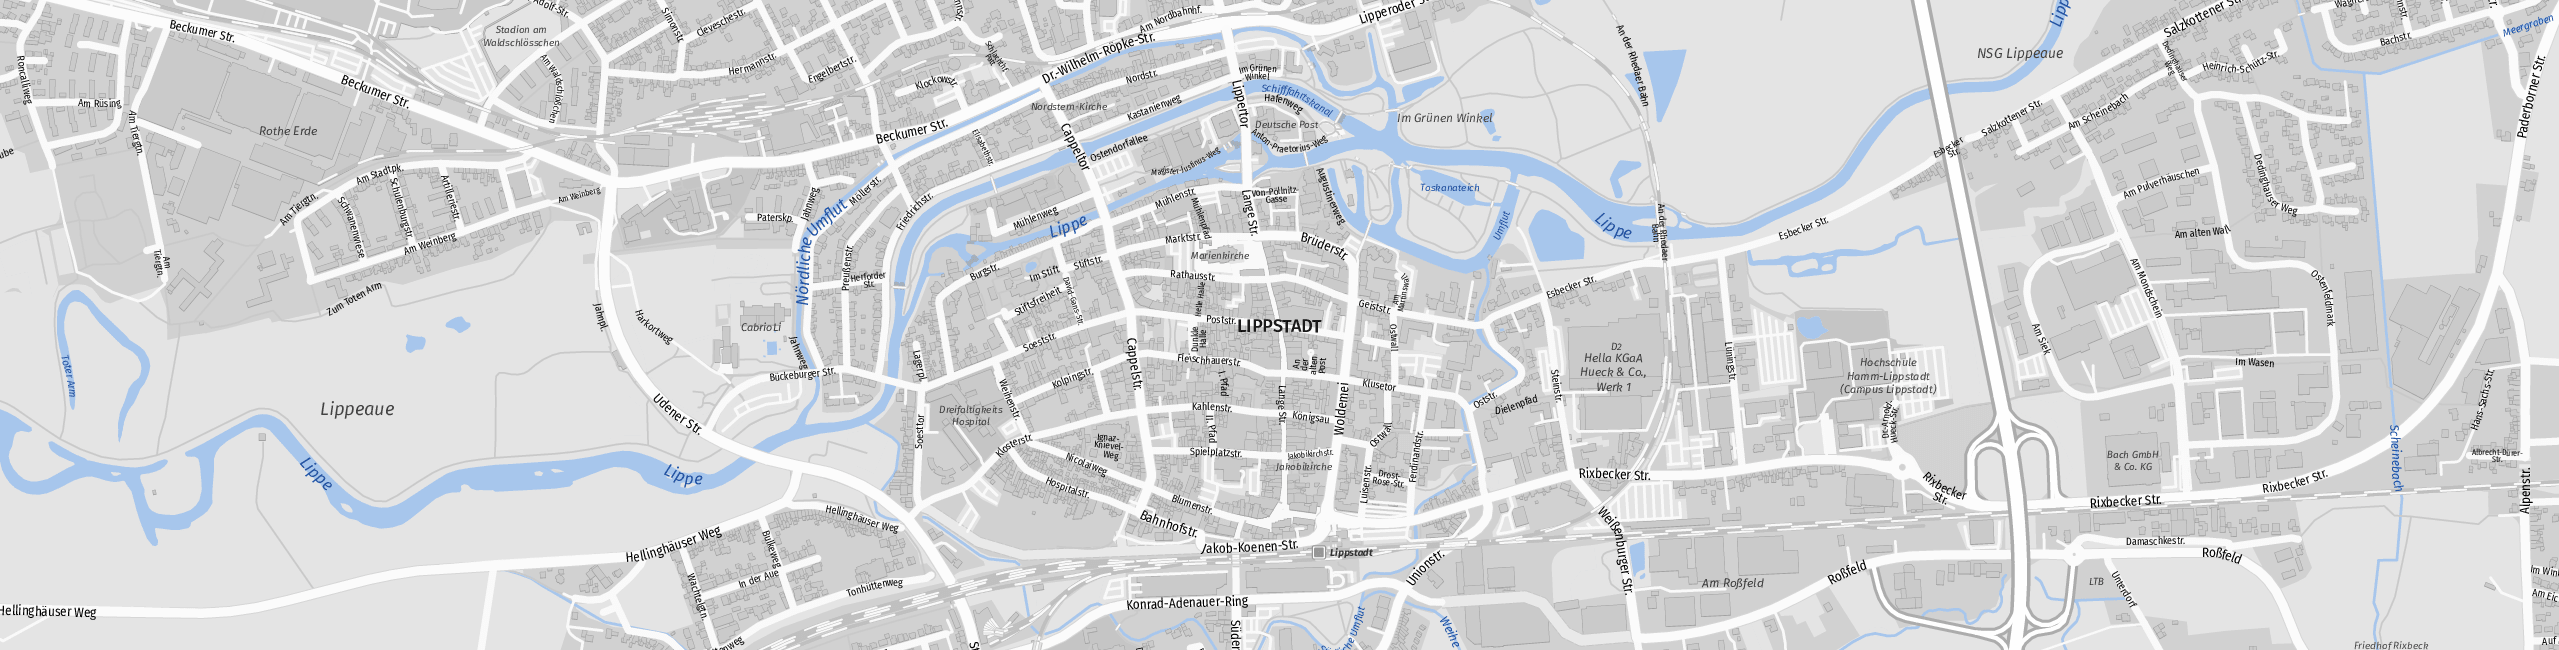 Stadtplan Lippstadt zum Downloaden.